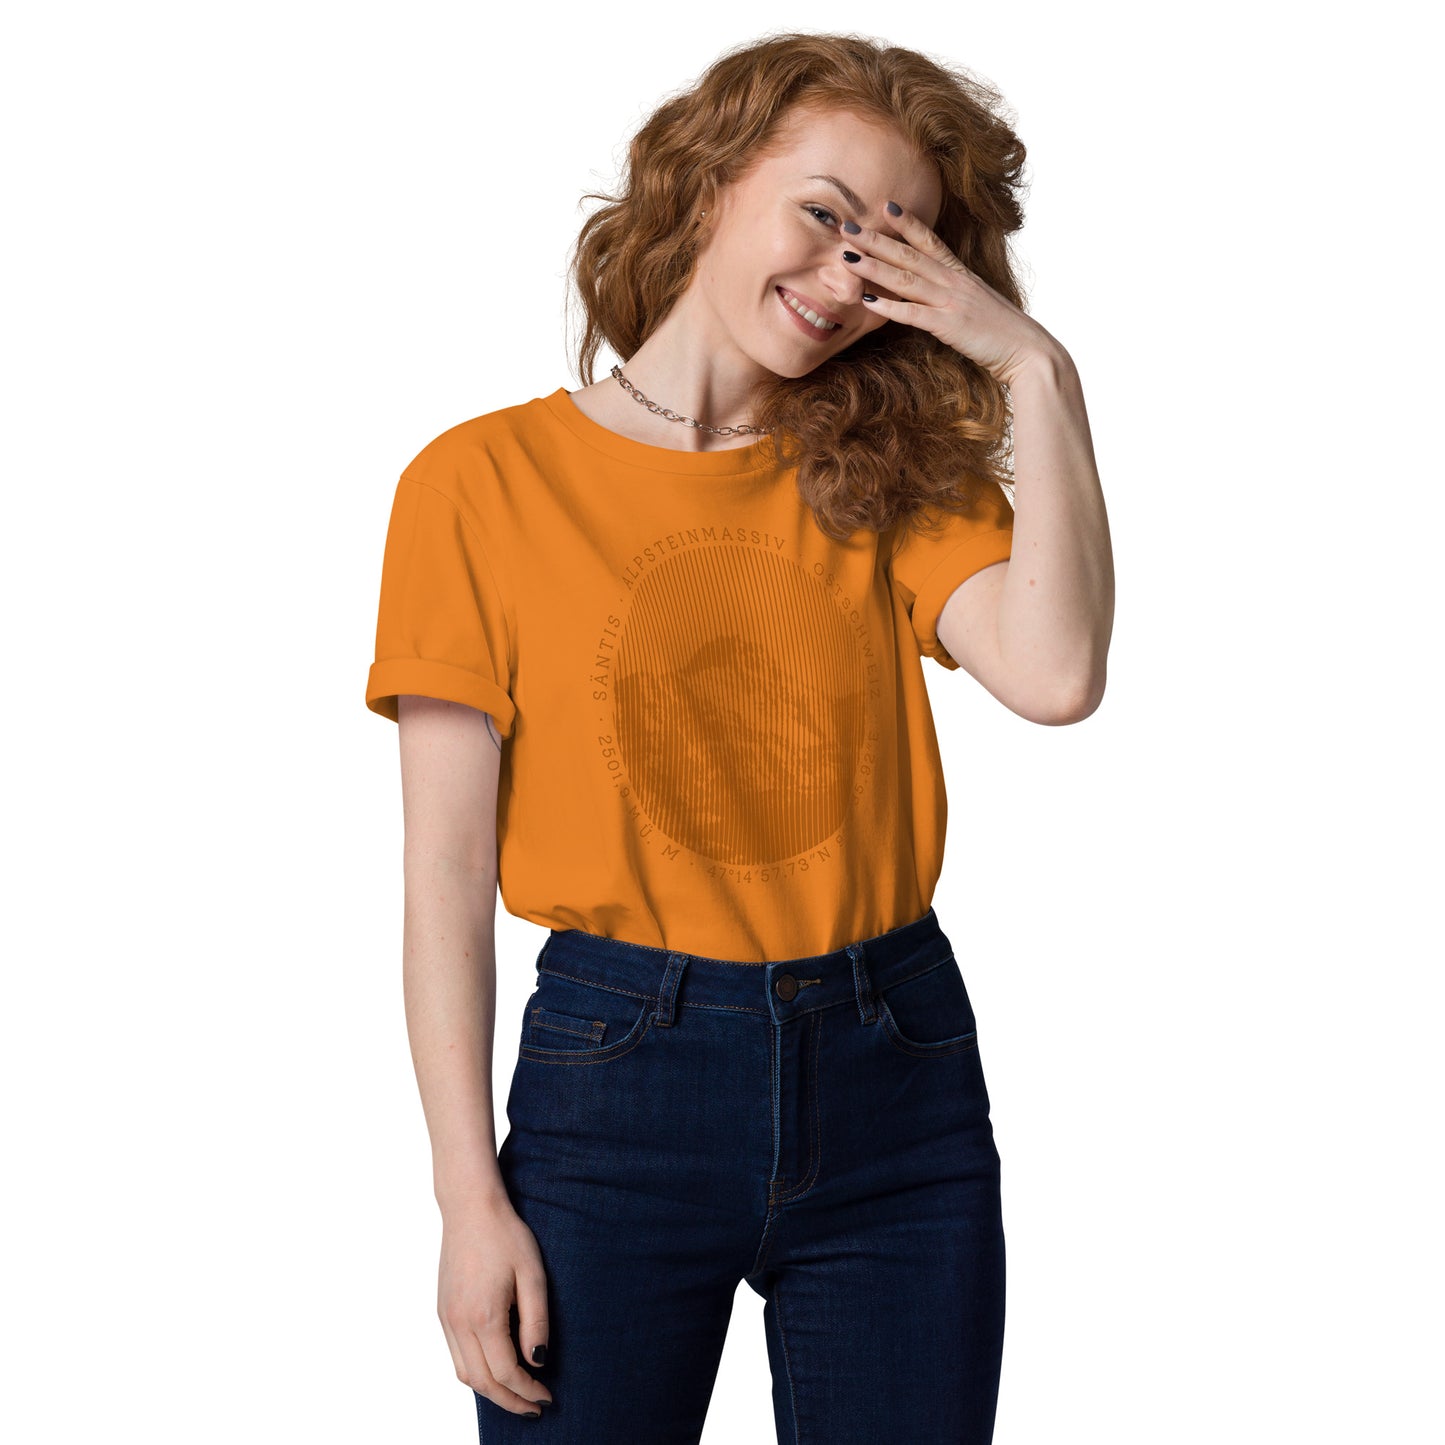 Diese Naturfreundin trägt ein oranges Damen T-Shirt von Vallada mit einem Aufdruck des Säntis-Gipfels. Dieses T-Shirt aus Bio-Baumwolle ist ein Ausdruck ihres Enthusiasmus für die Region des Alpsteins.